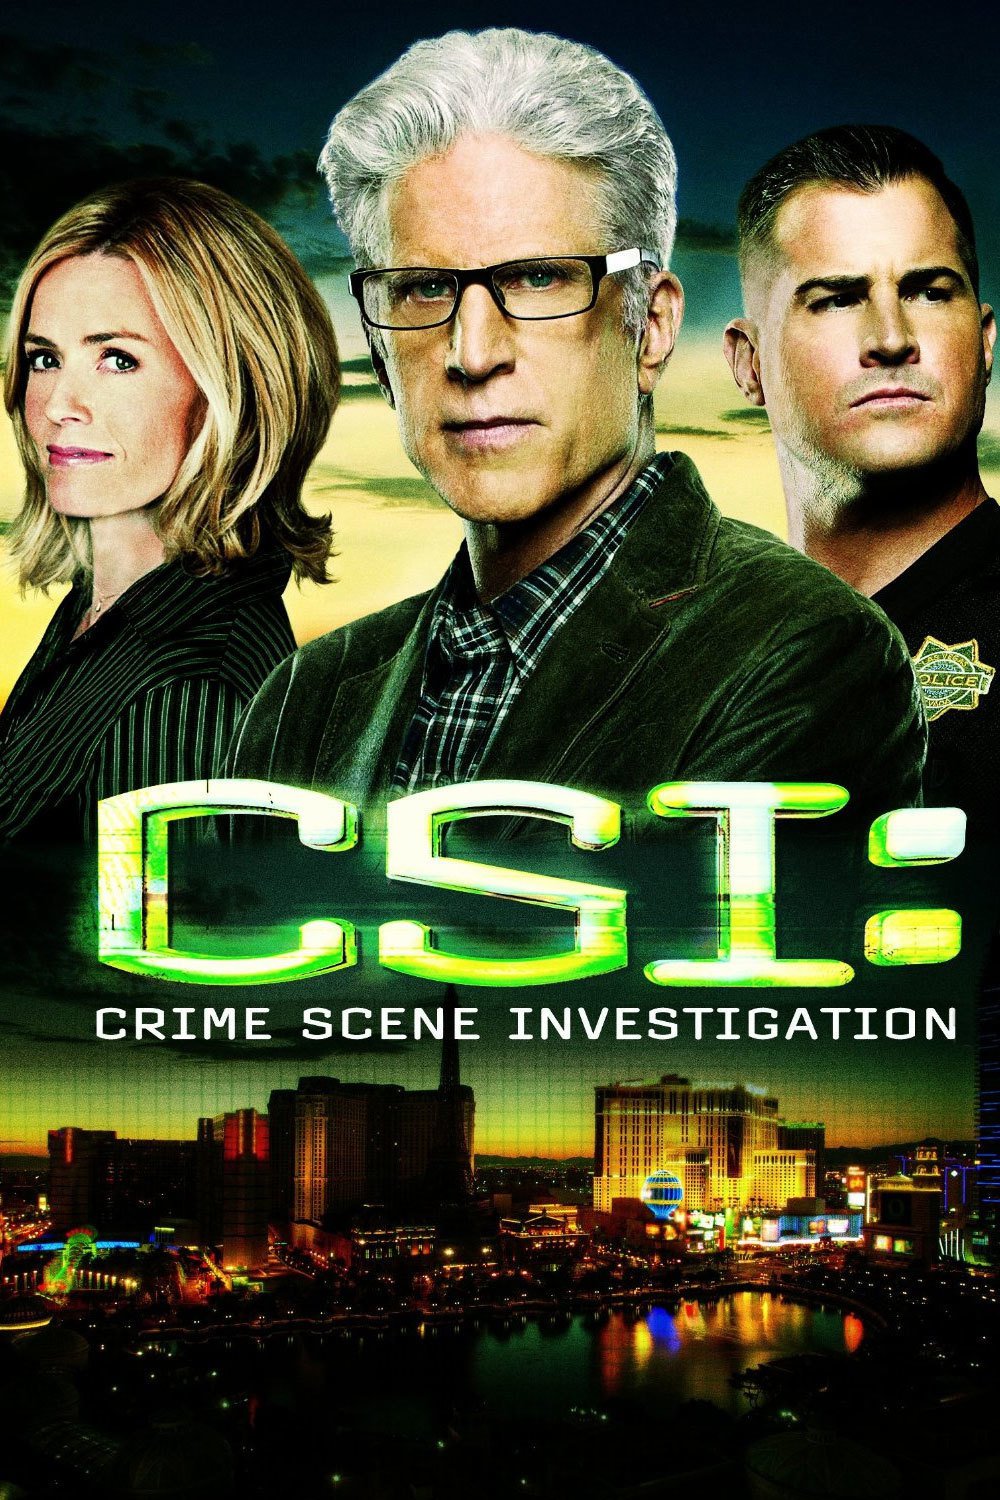 Watch at 6 & 11: CSI Savannah